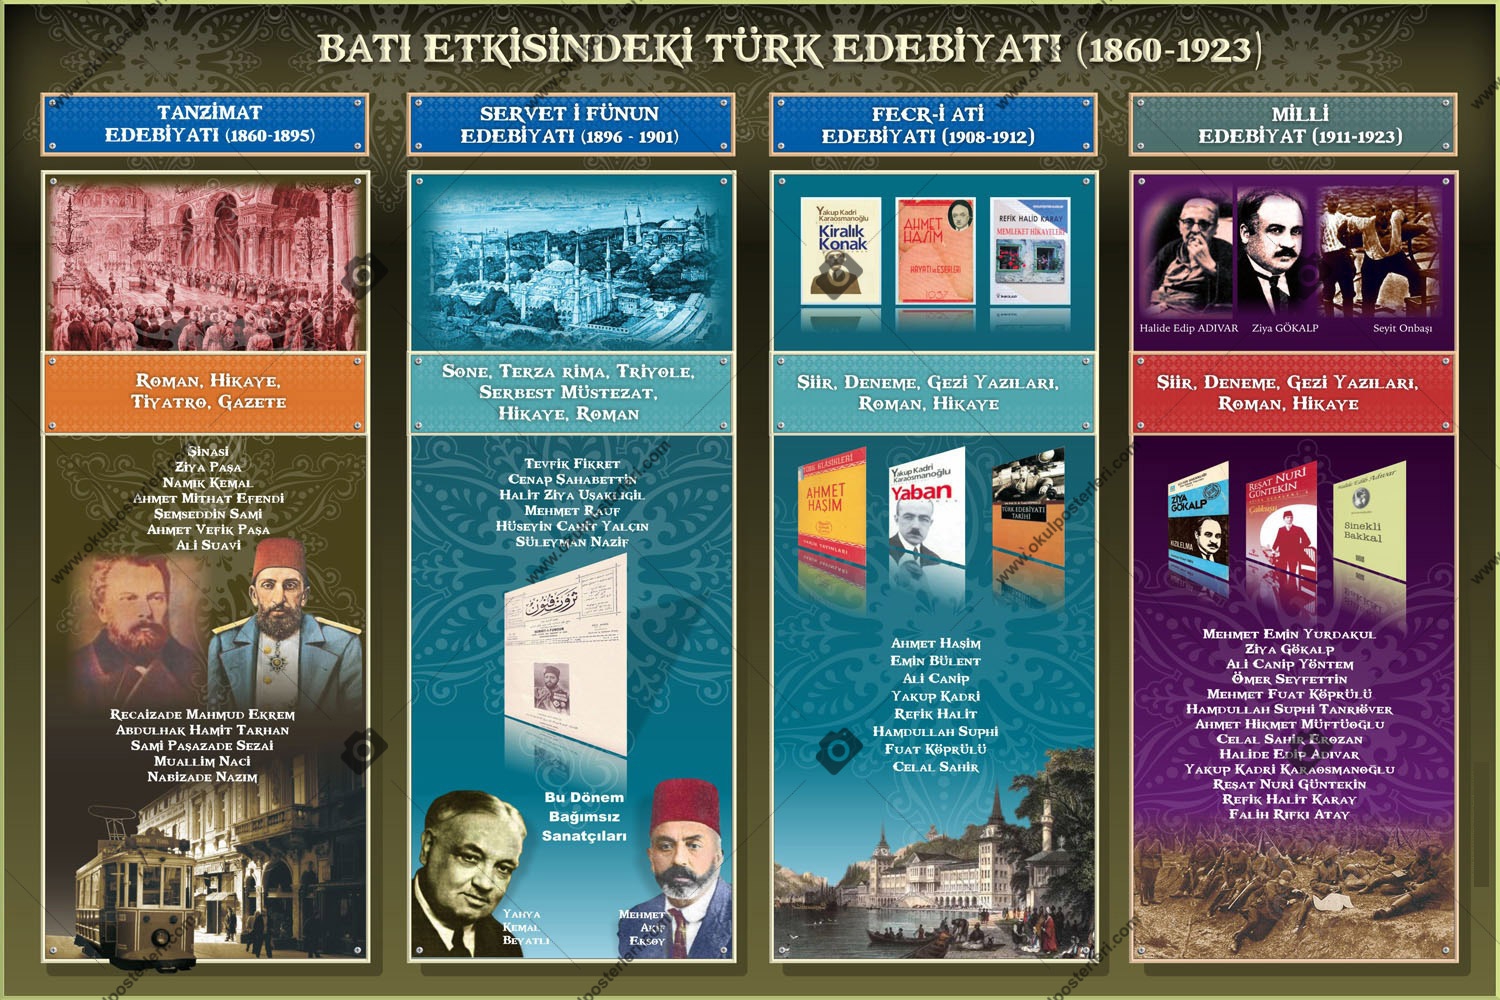 Batı Etkisinde Türk Edebiyatı Posteri 1